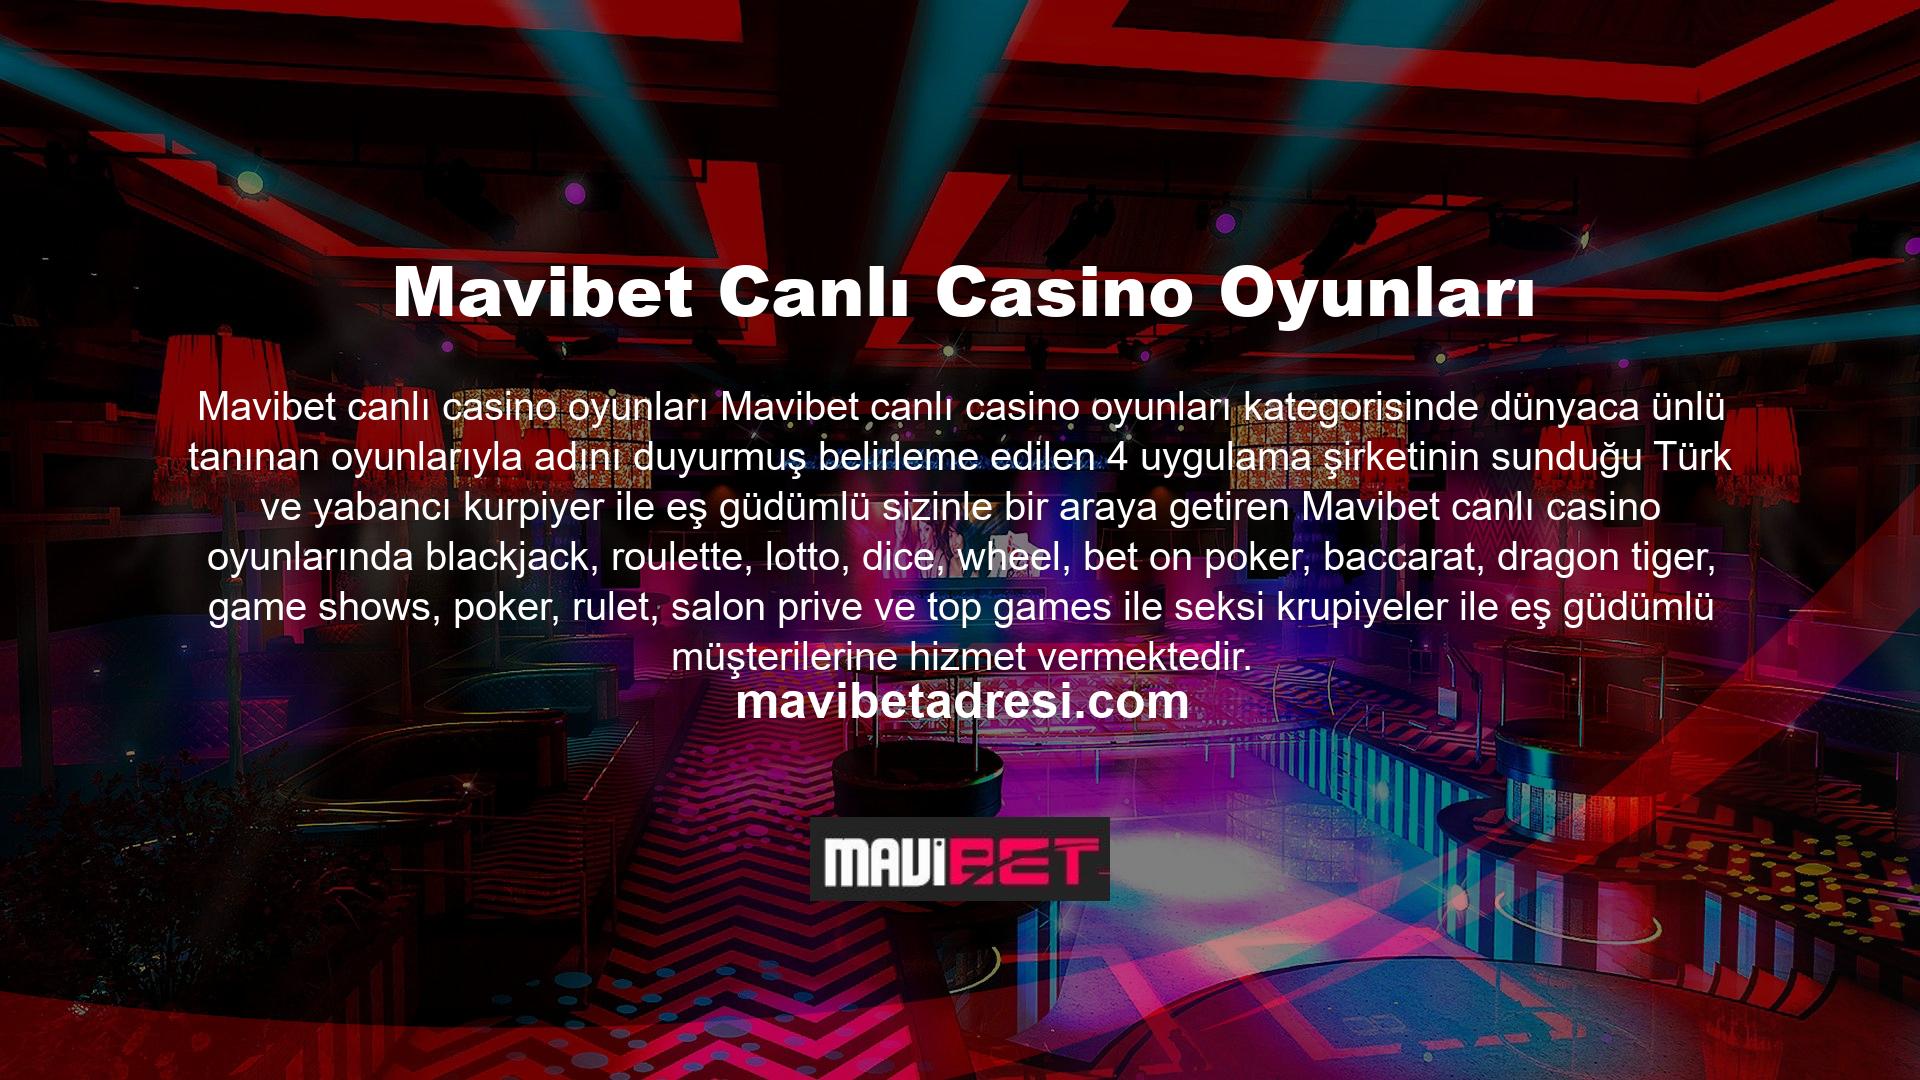 Sorunsuzca çalışan mobil casino sürümü, dilediğiniz her yerden Mavibet casino oyunlarına ulaşmaya imkân vermektedir